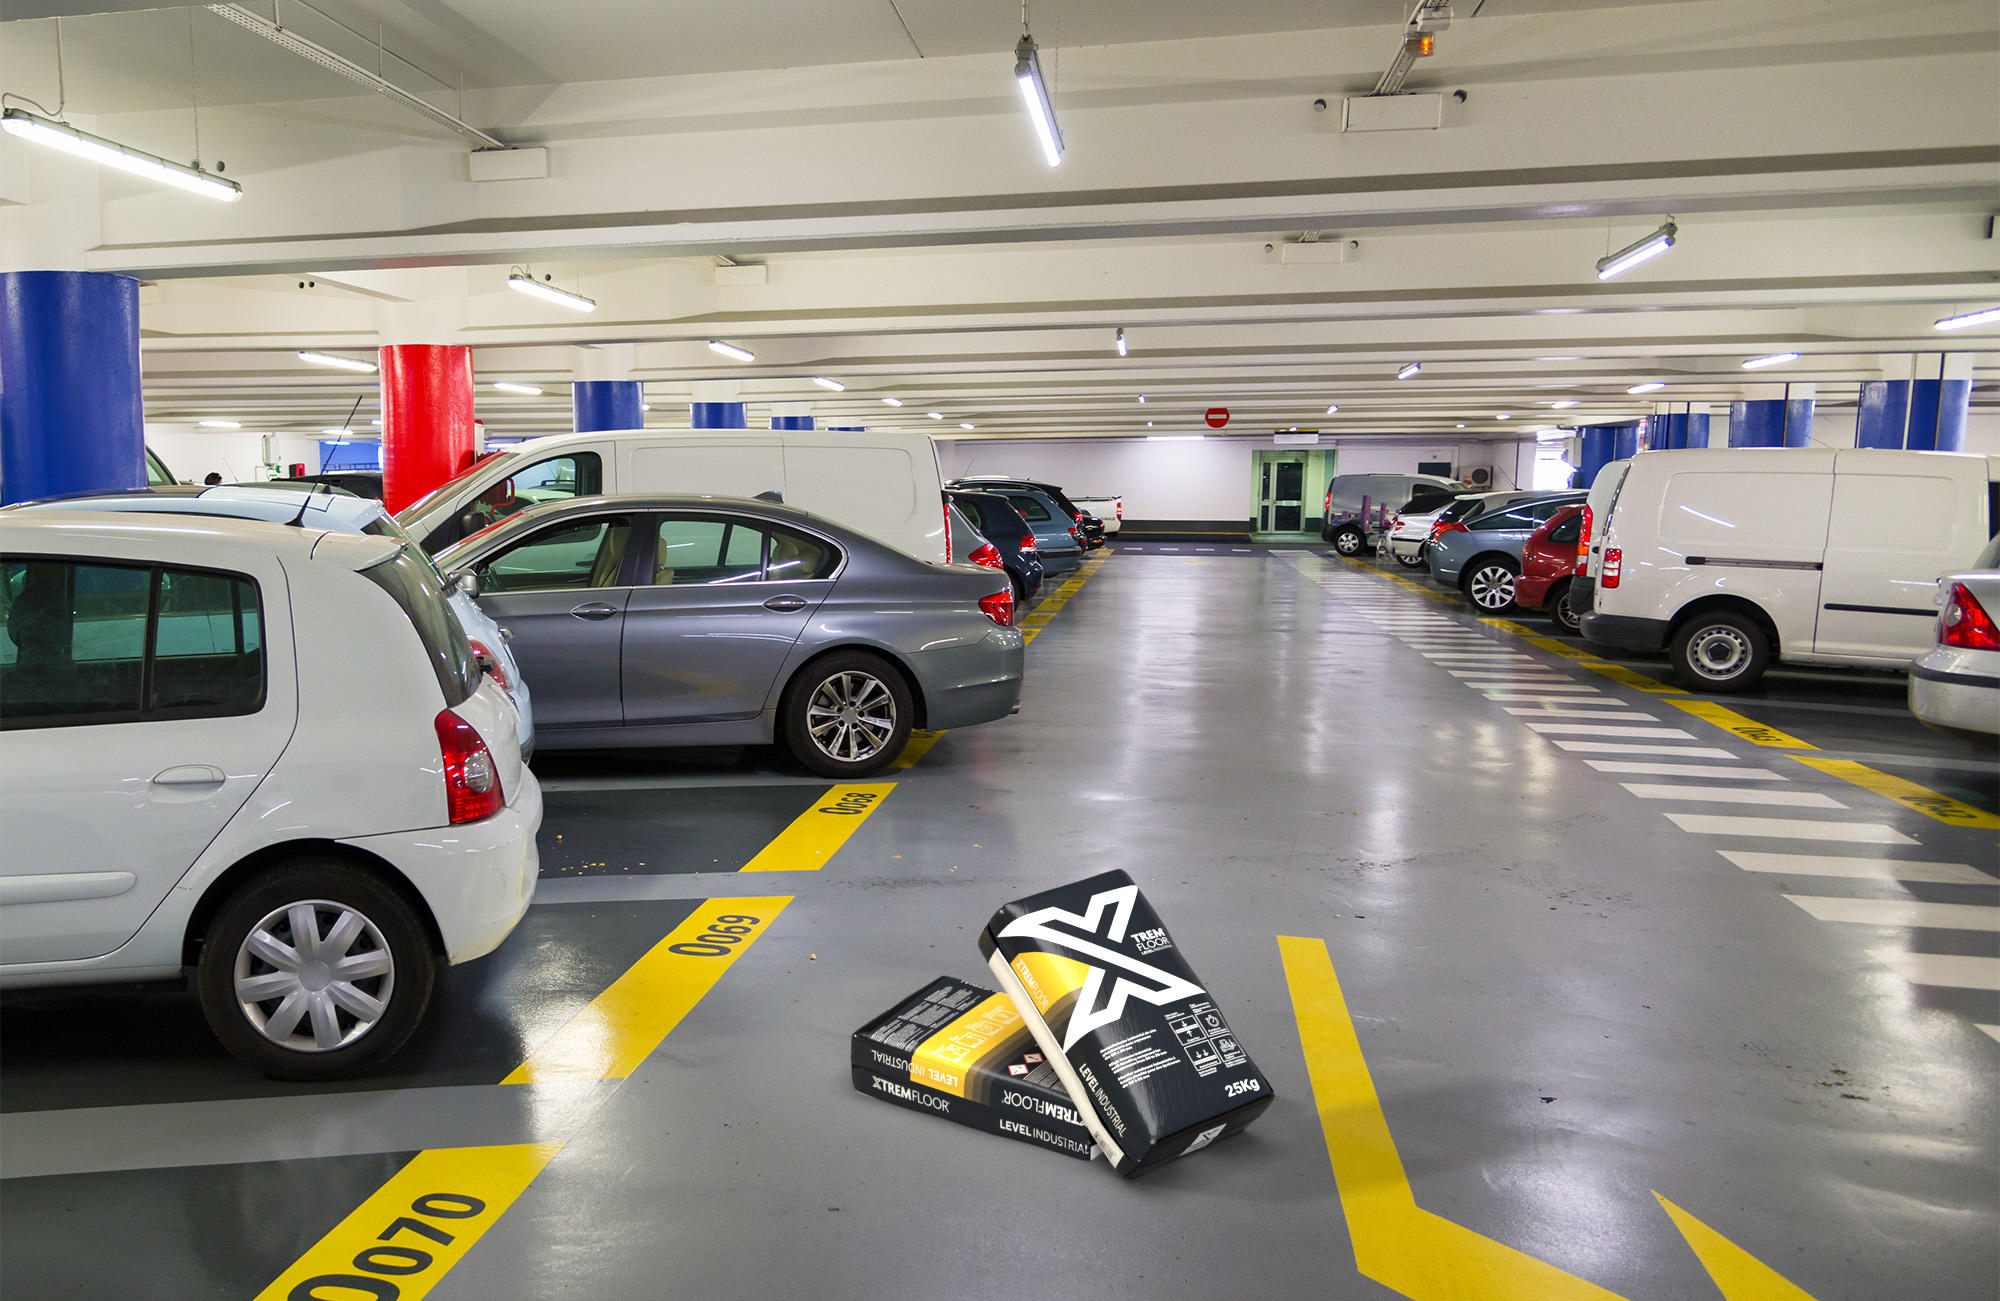   parking avec autolissant industriel XTREMFLOOR® Level Industrial sur le sol